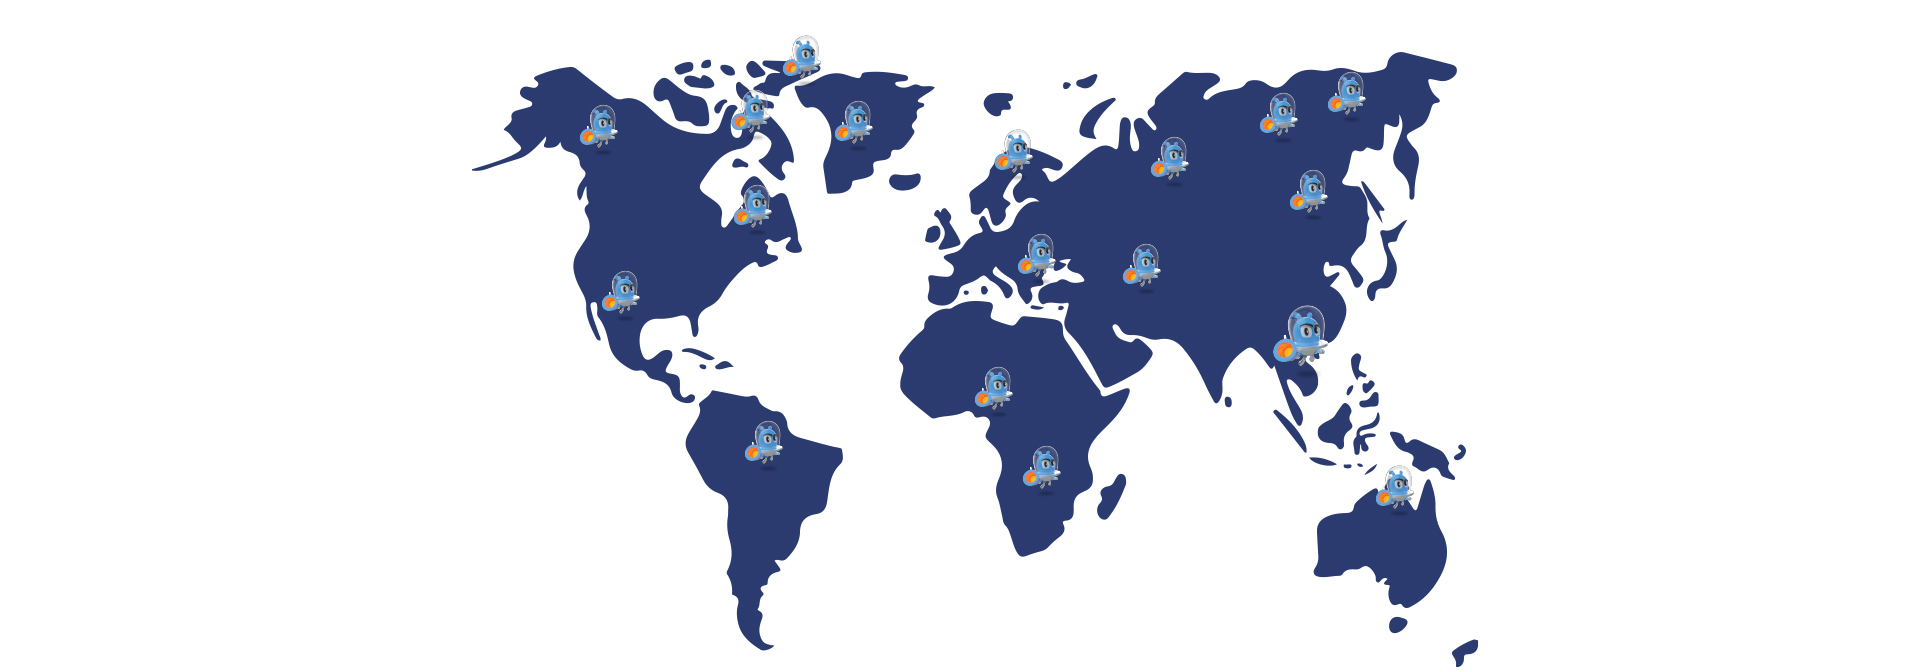 Sản phẩm của LiveSpo xuất khuẩn đi hơn 20 quốc gia trên thế giới